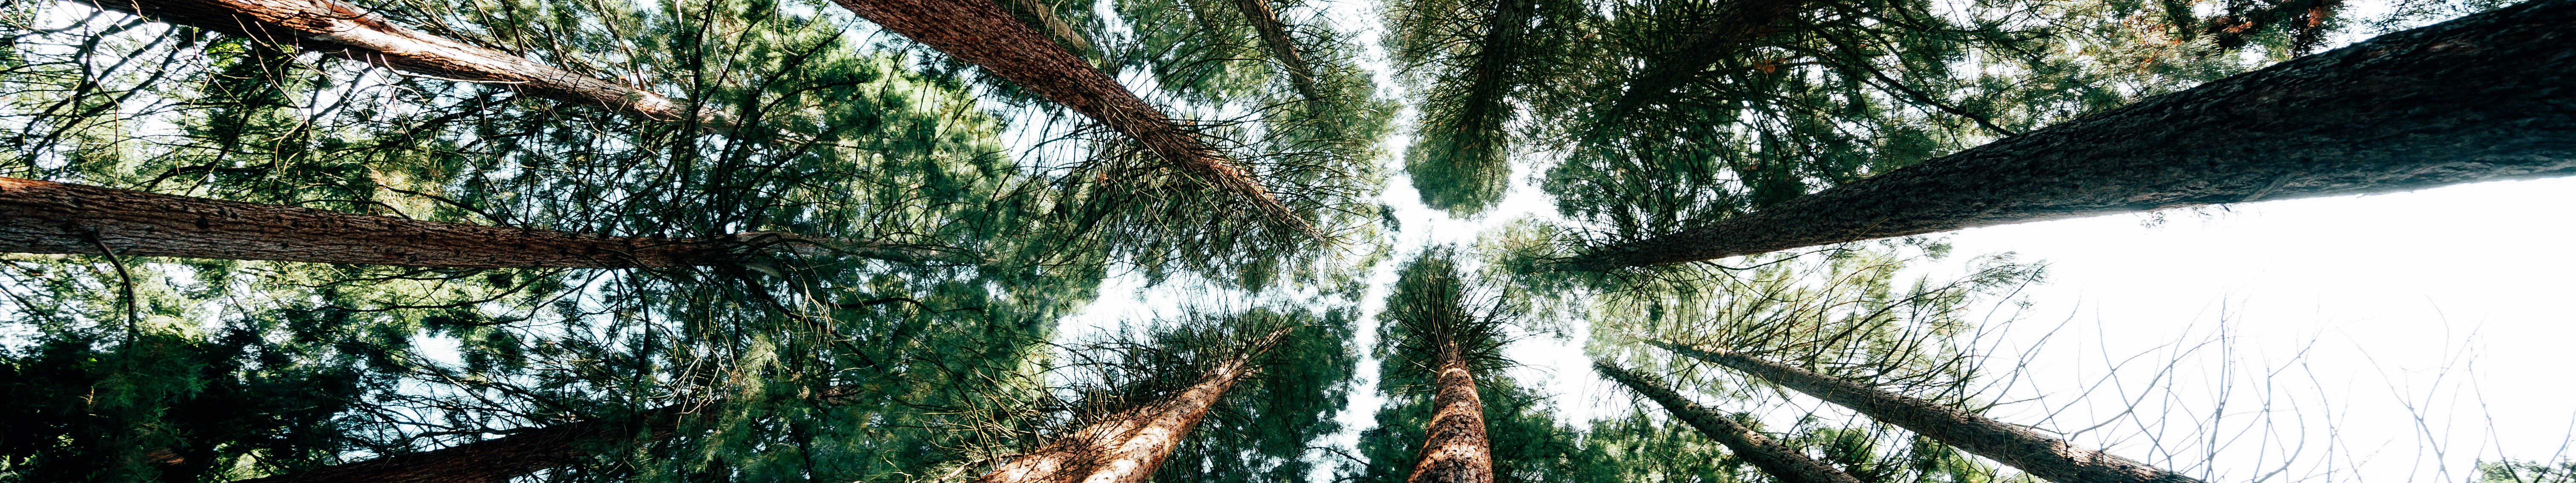 Sequoiafarm Kaldenkirchen Niederrhein © Johannes Höhn